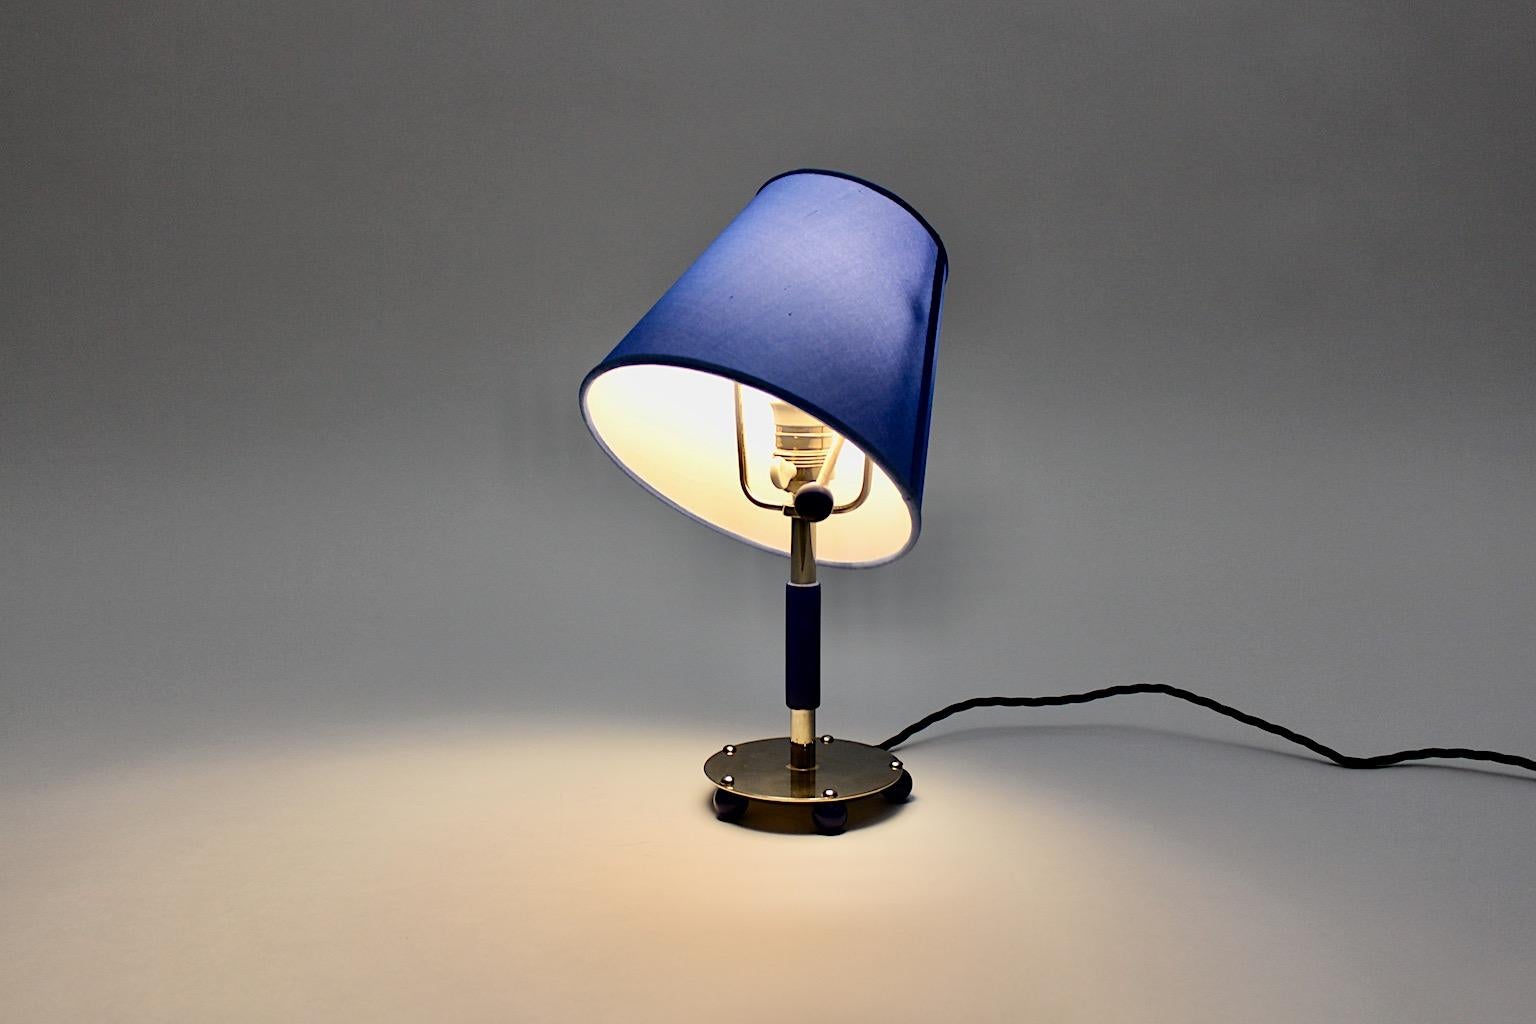 Blue Art Deco Vintage Chromed Metal Adjustable Table Lamp, 1930, Germany For Sale 3